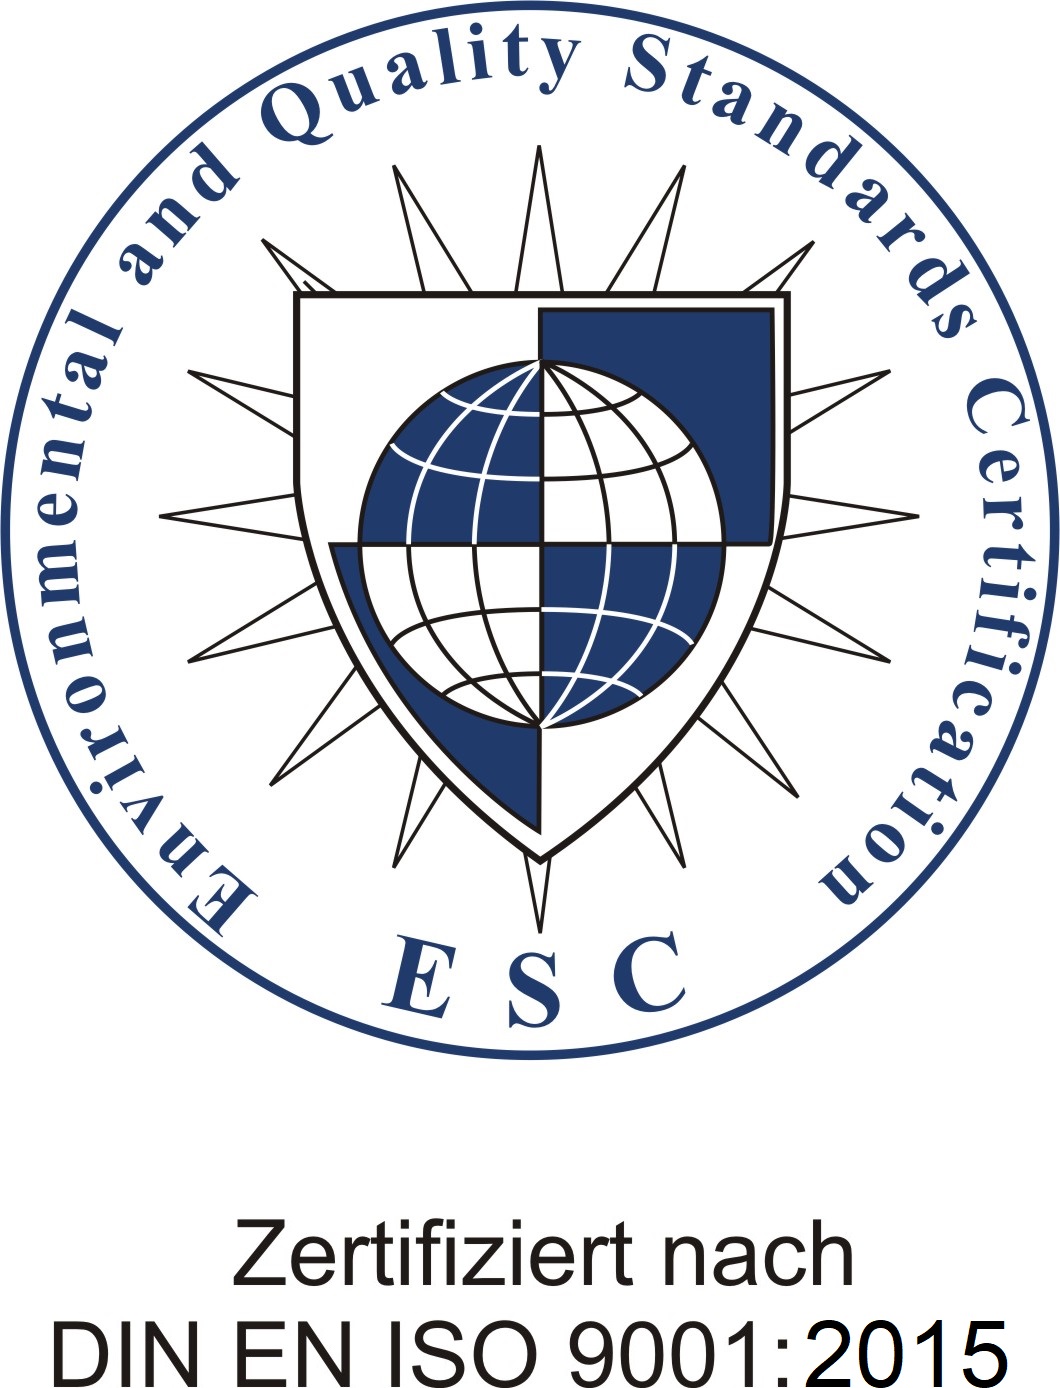 Auf den Bild ist ein zertifiziertes Siegel der ESC zu sehen.